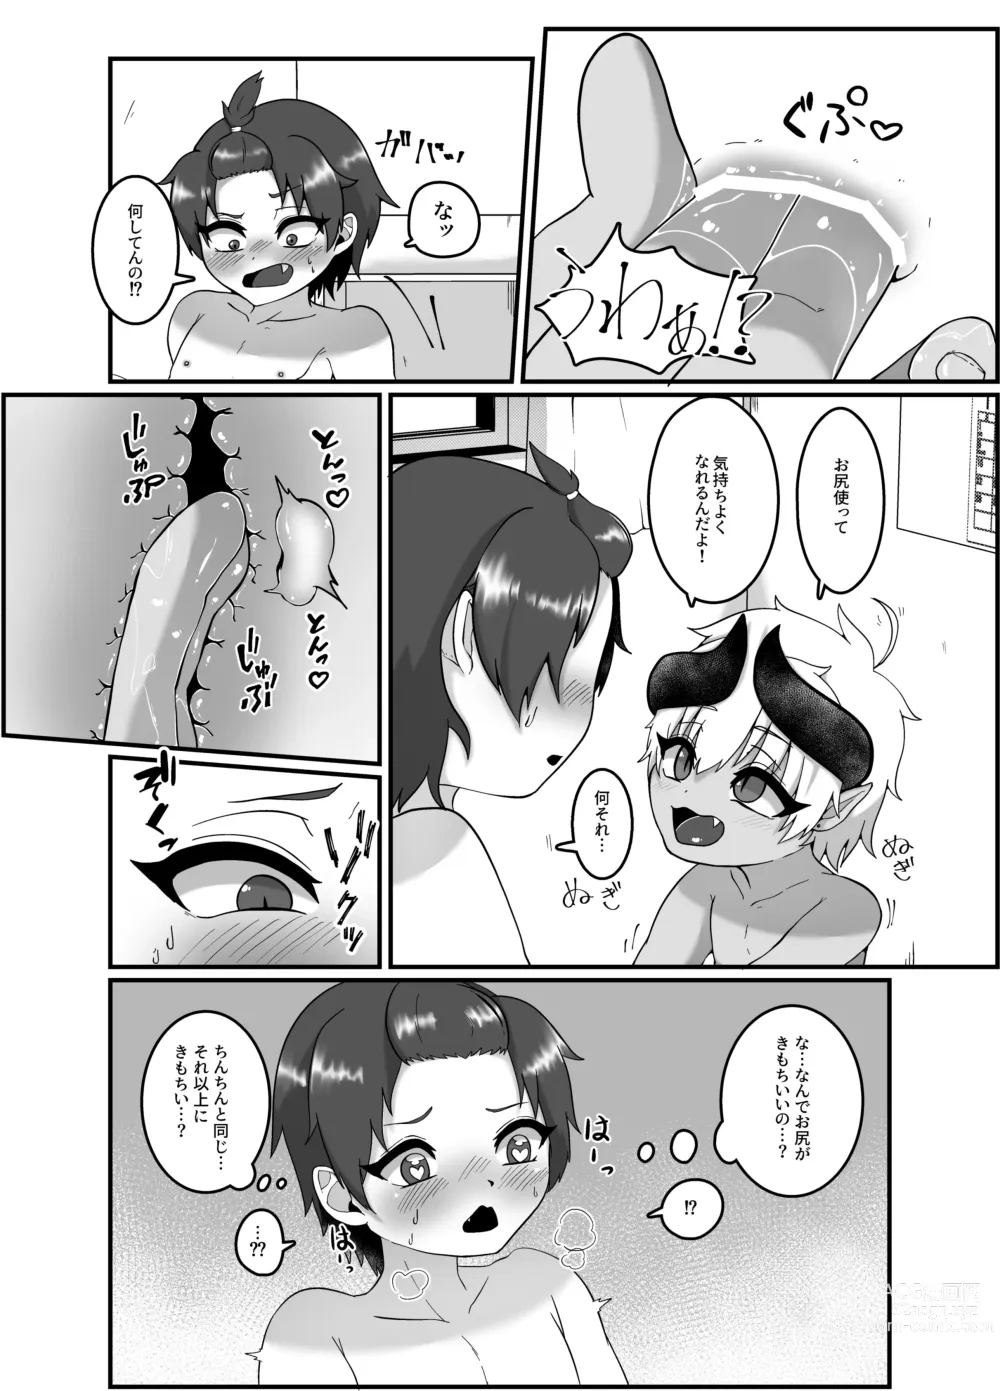 Page 10 of doujinshi 俺とお勉強しよっ!